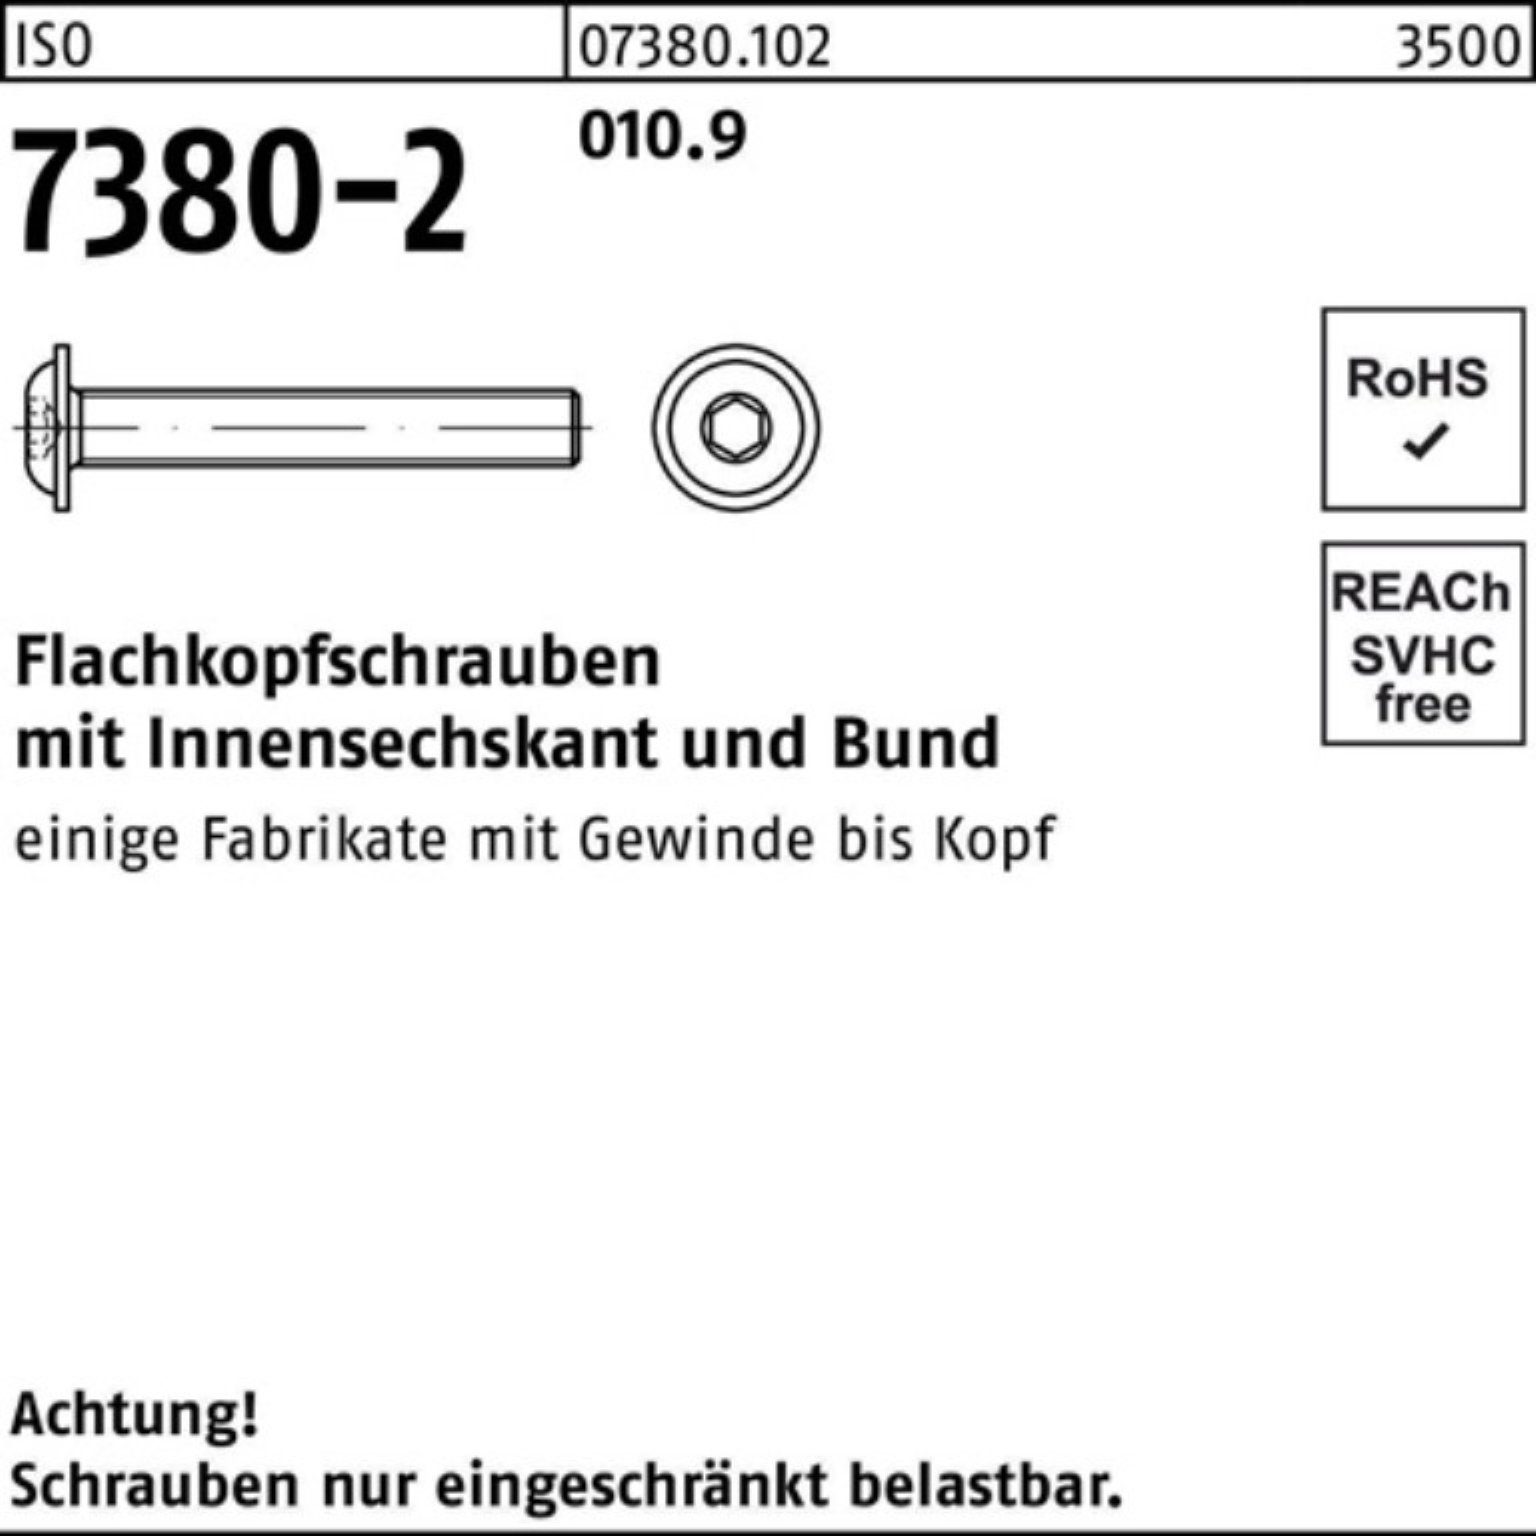 Bund/Innen-6kt 010.9 500er M6x Pack 500 ISO 7380-2 Reyher Flachkopfschraube Schraube 6